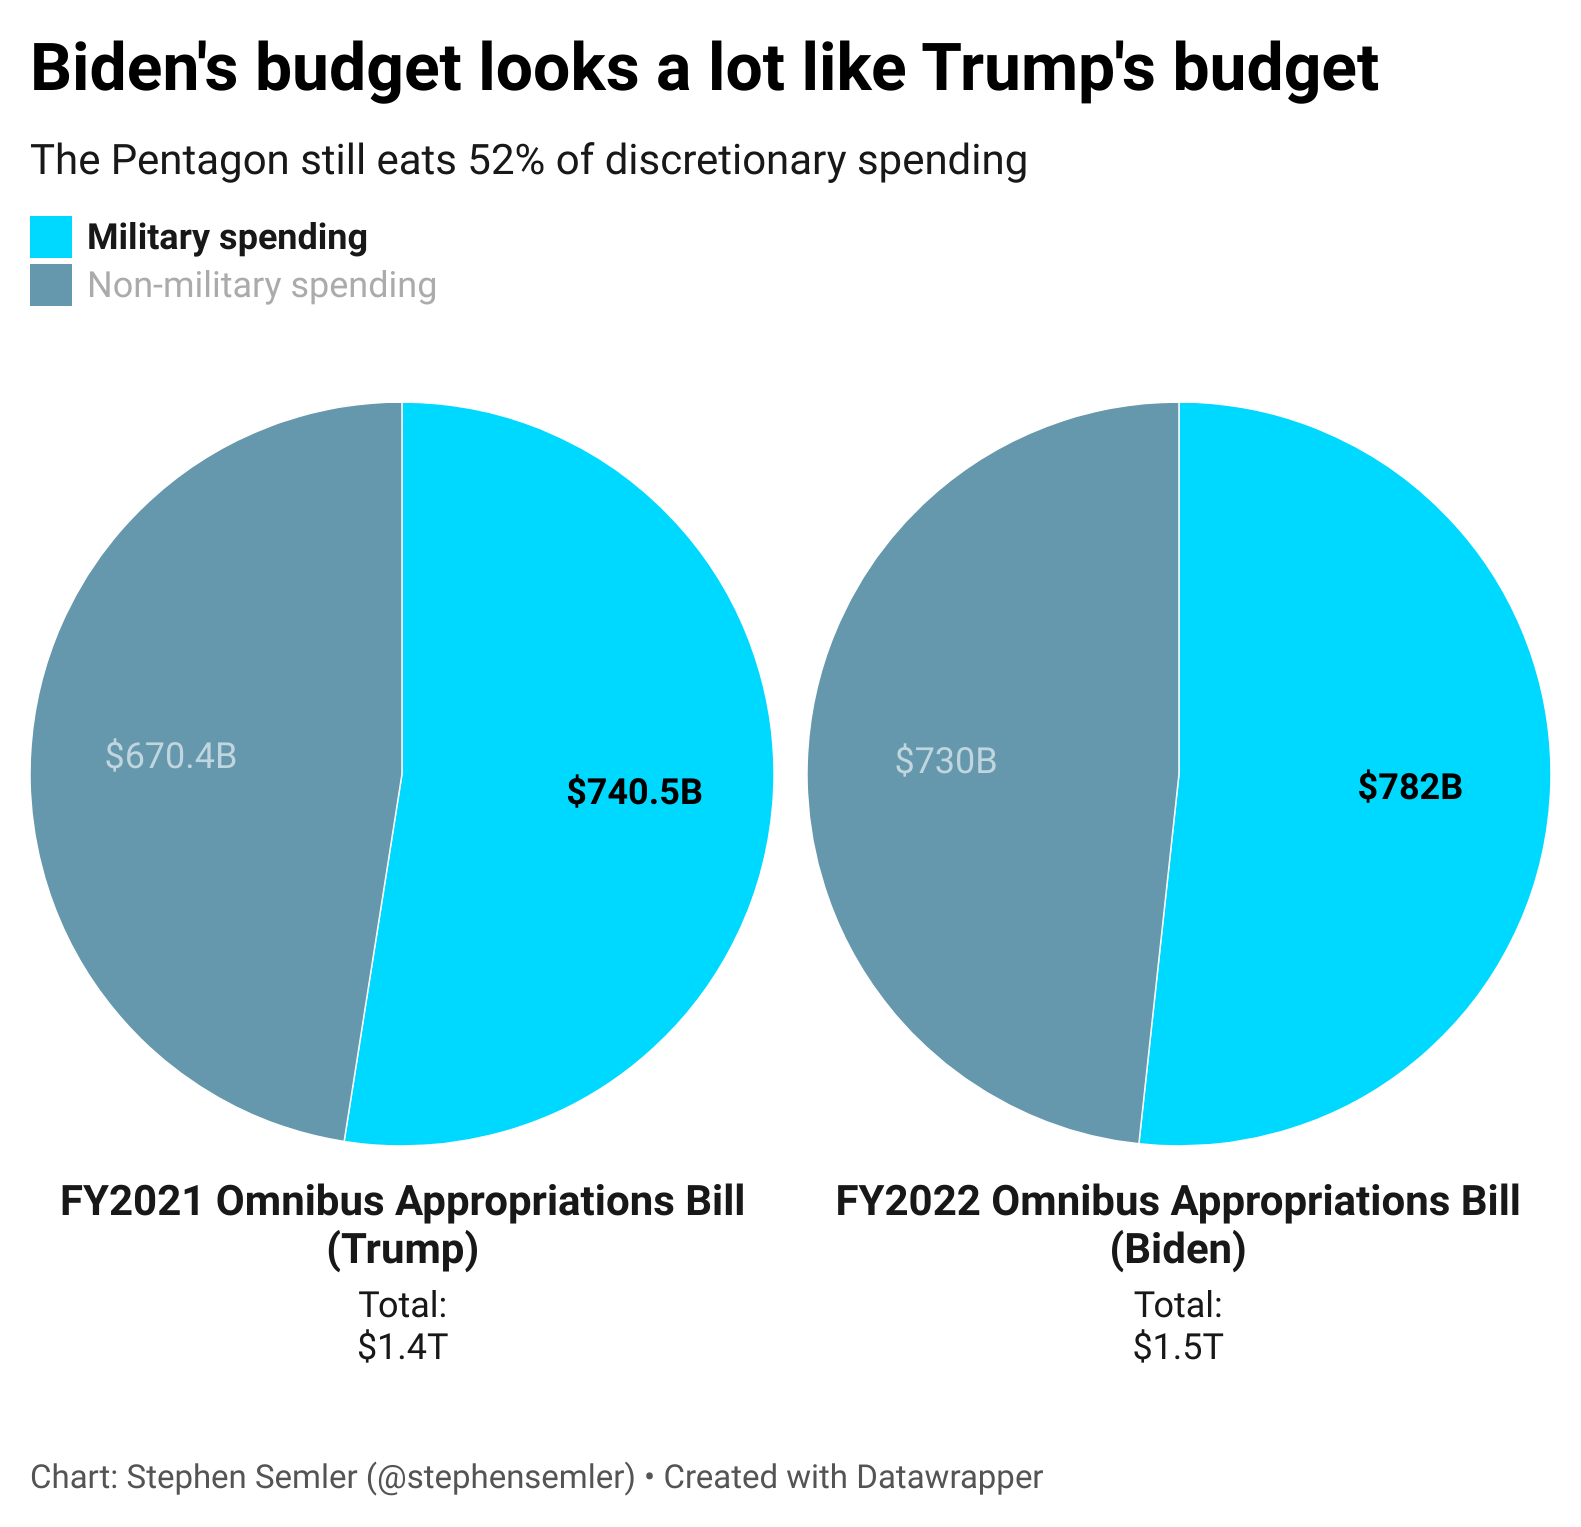 Biden’s first budget vs. Trump’s last budget